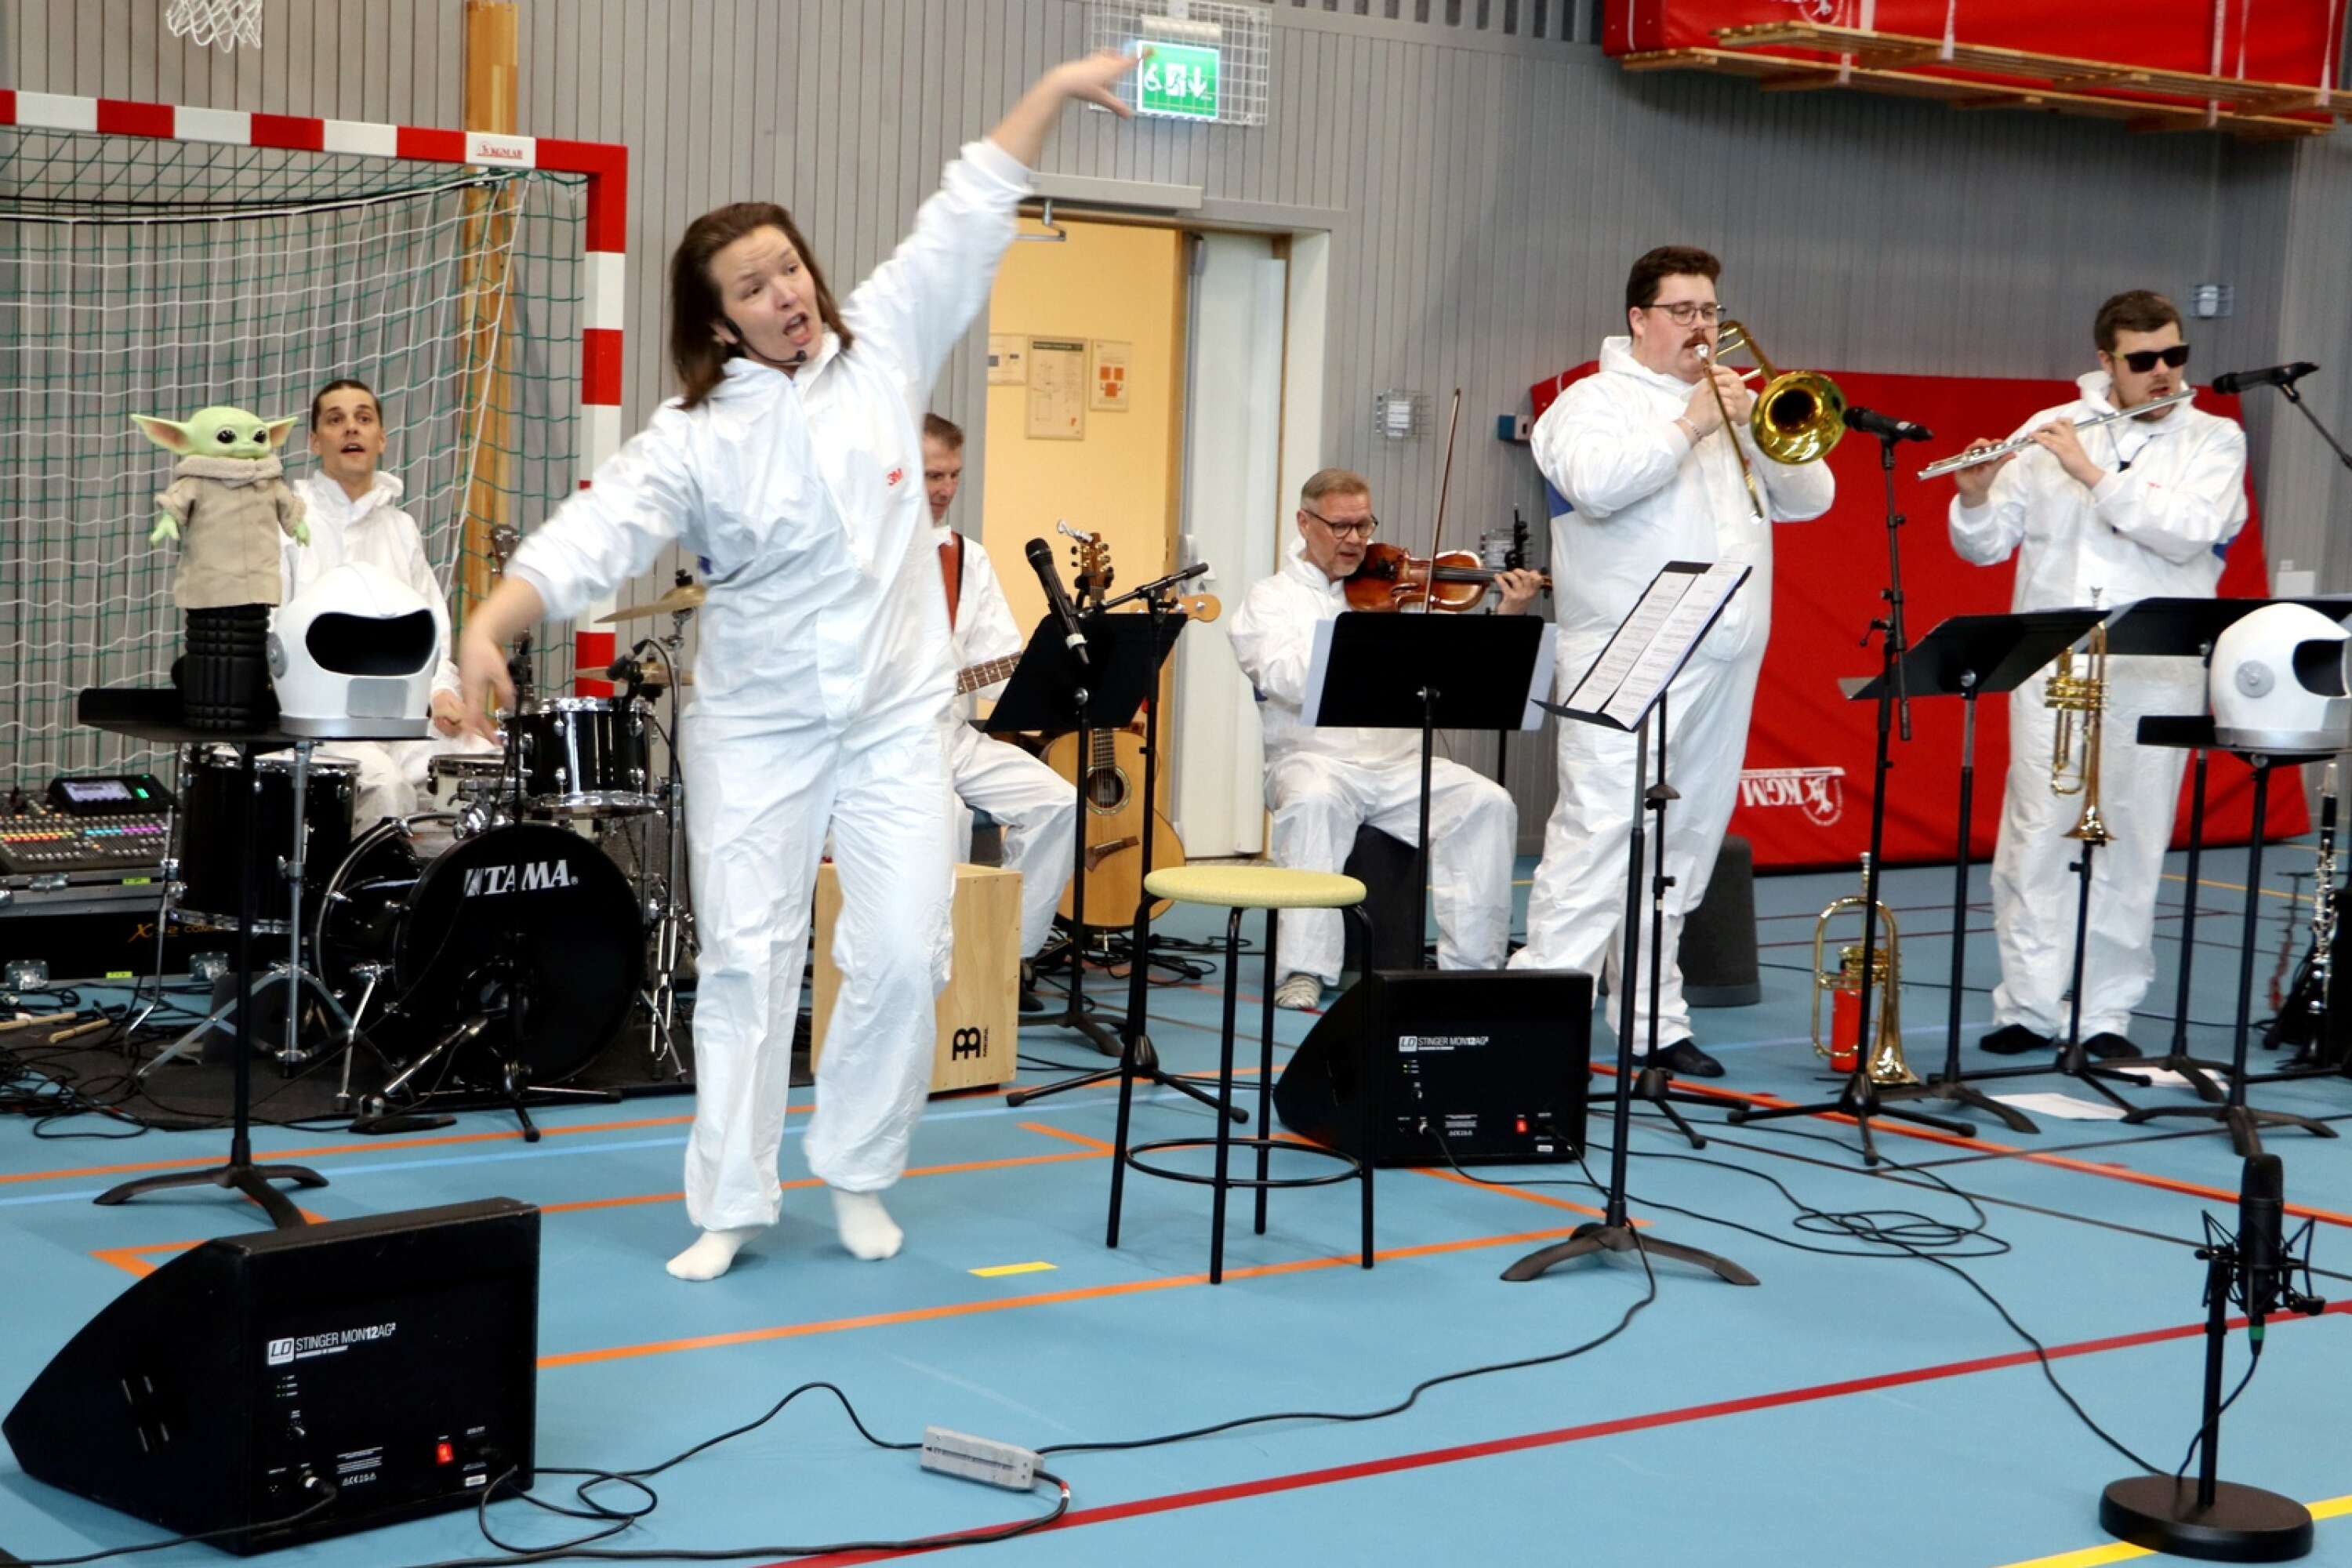 Sångledare Mathilde Svedlund tog fronten och backades upp av övriga astronauter med instrument, det vill säga kulturskolans band.